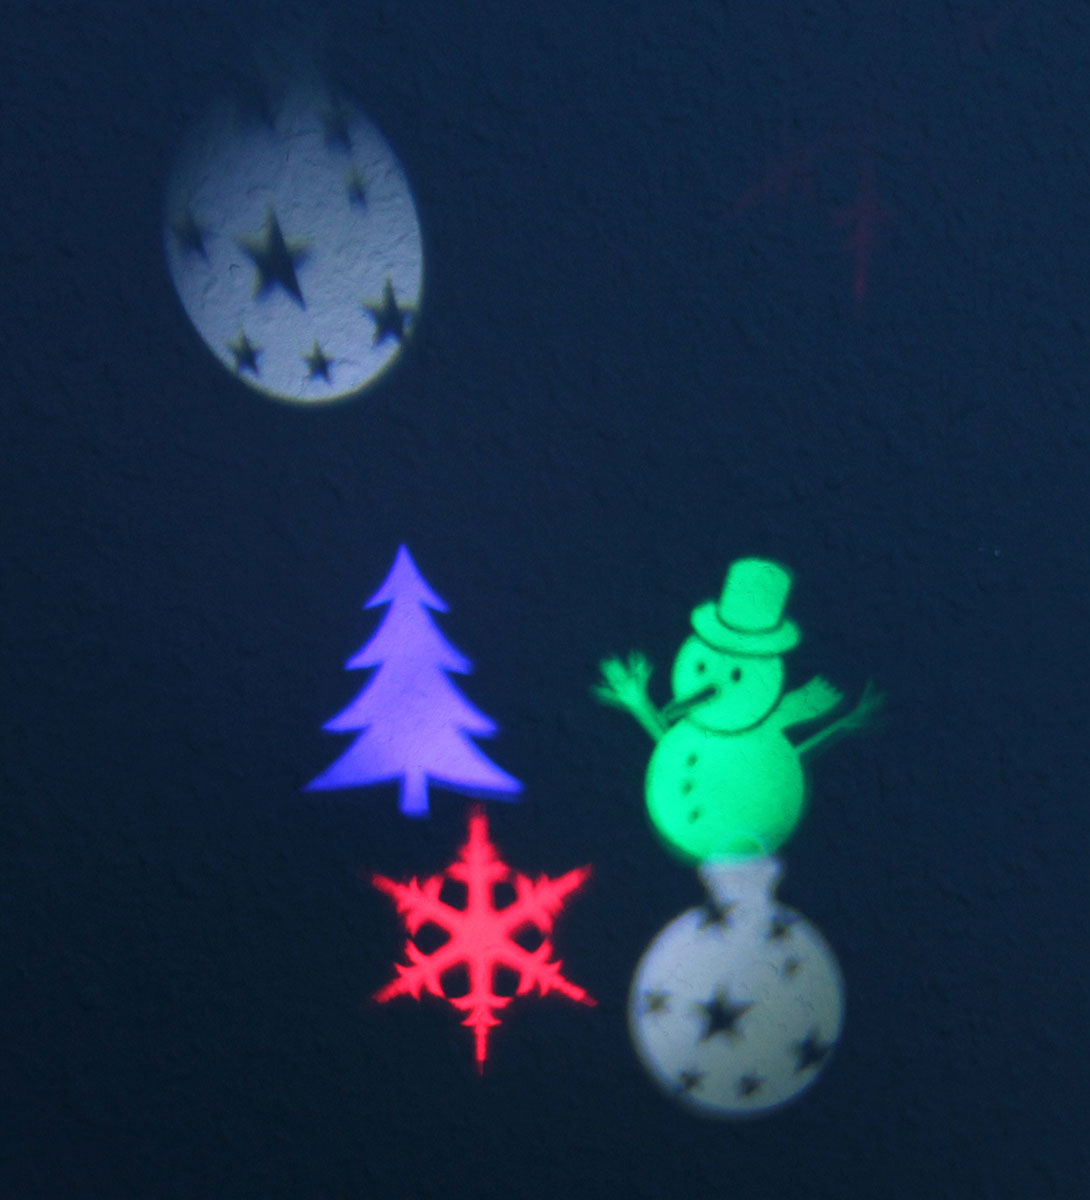 LED Projektor Weihnachtslicht Winter Deko Innenbeleuchtung mit 6 Motiv-Schablonen Weihnachten